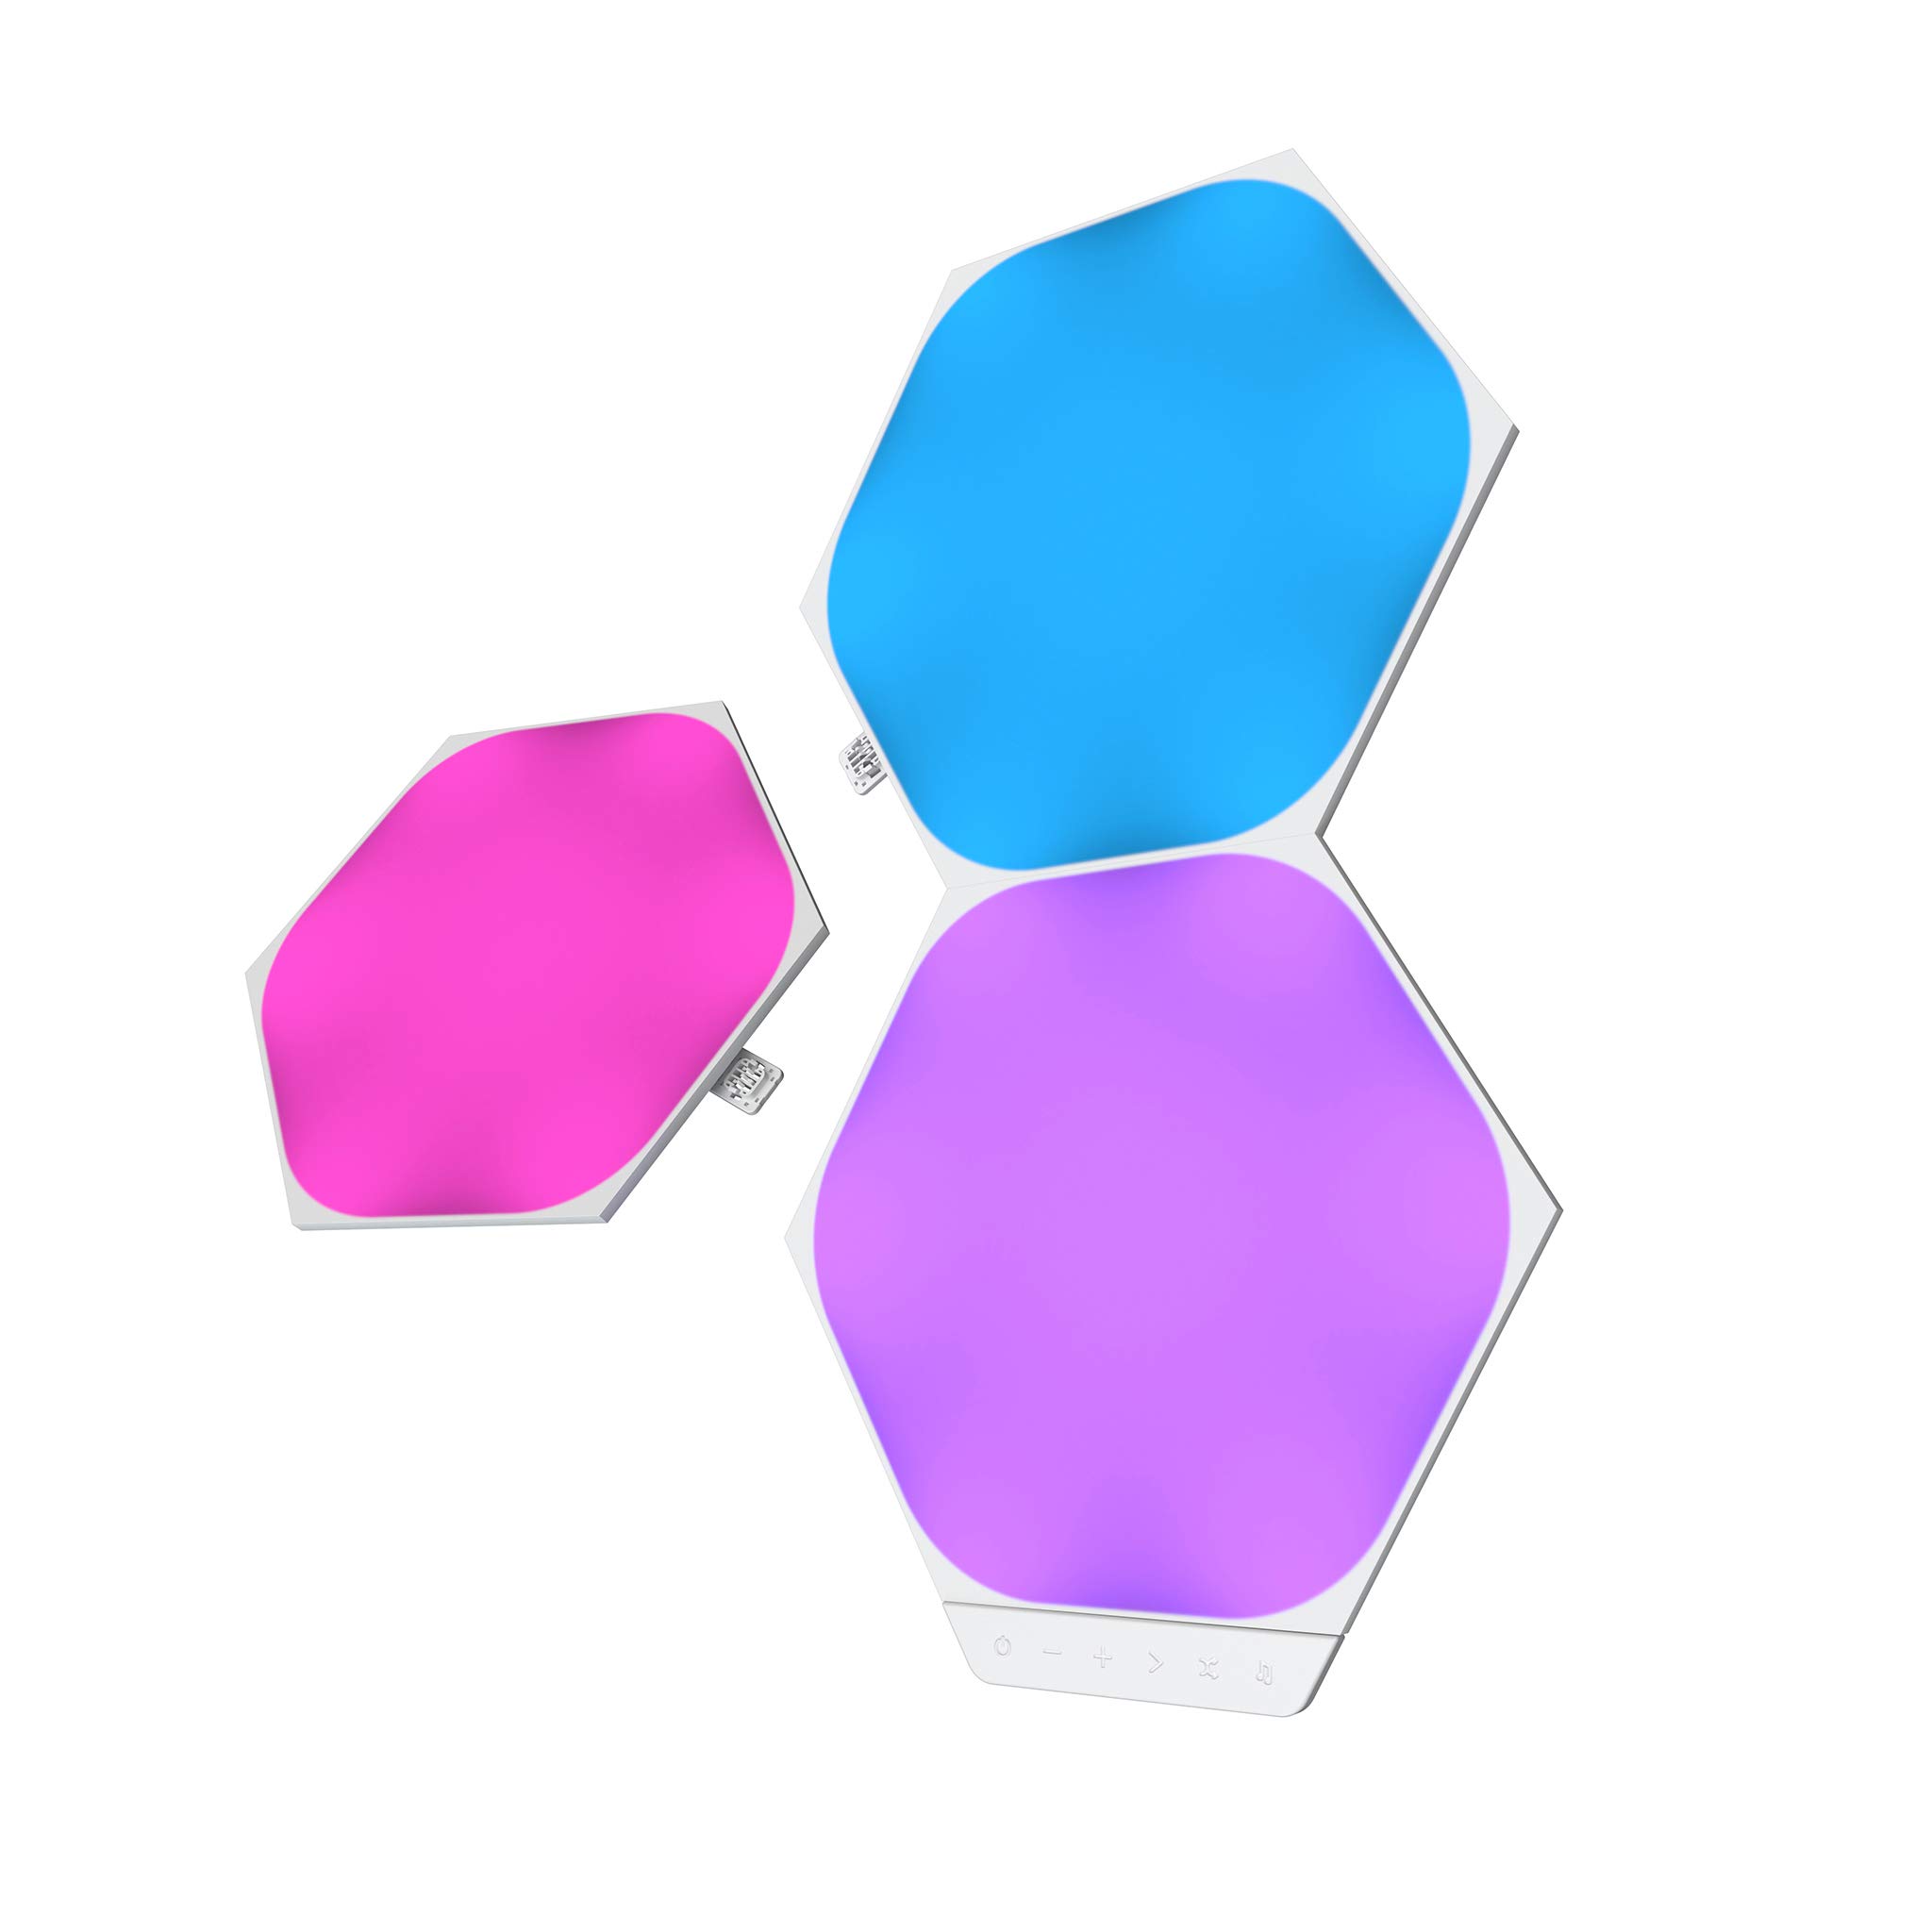 Nanoleaf Shapes Hexagon Erweiterungspack, 3 zusätzliche LED Panels - Smarte Modulare RGBW WLAN 16 Mio. Farben Wandleuchte Innen, Musik & Bildschirm Sync, Funktioniert mit Alexa, Deko & Gaming